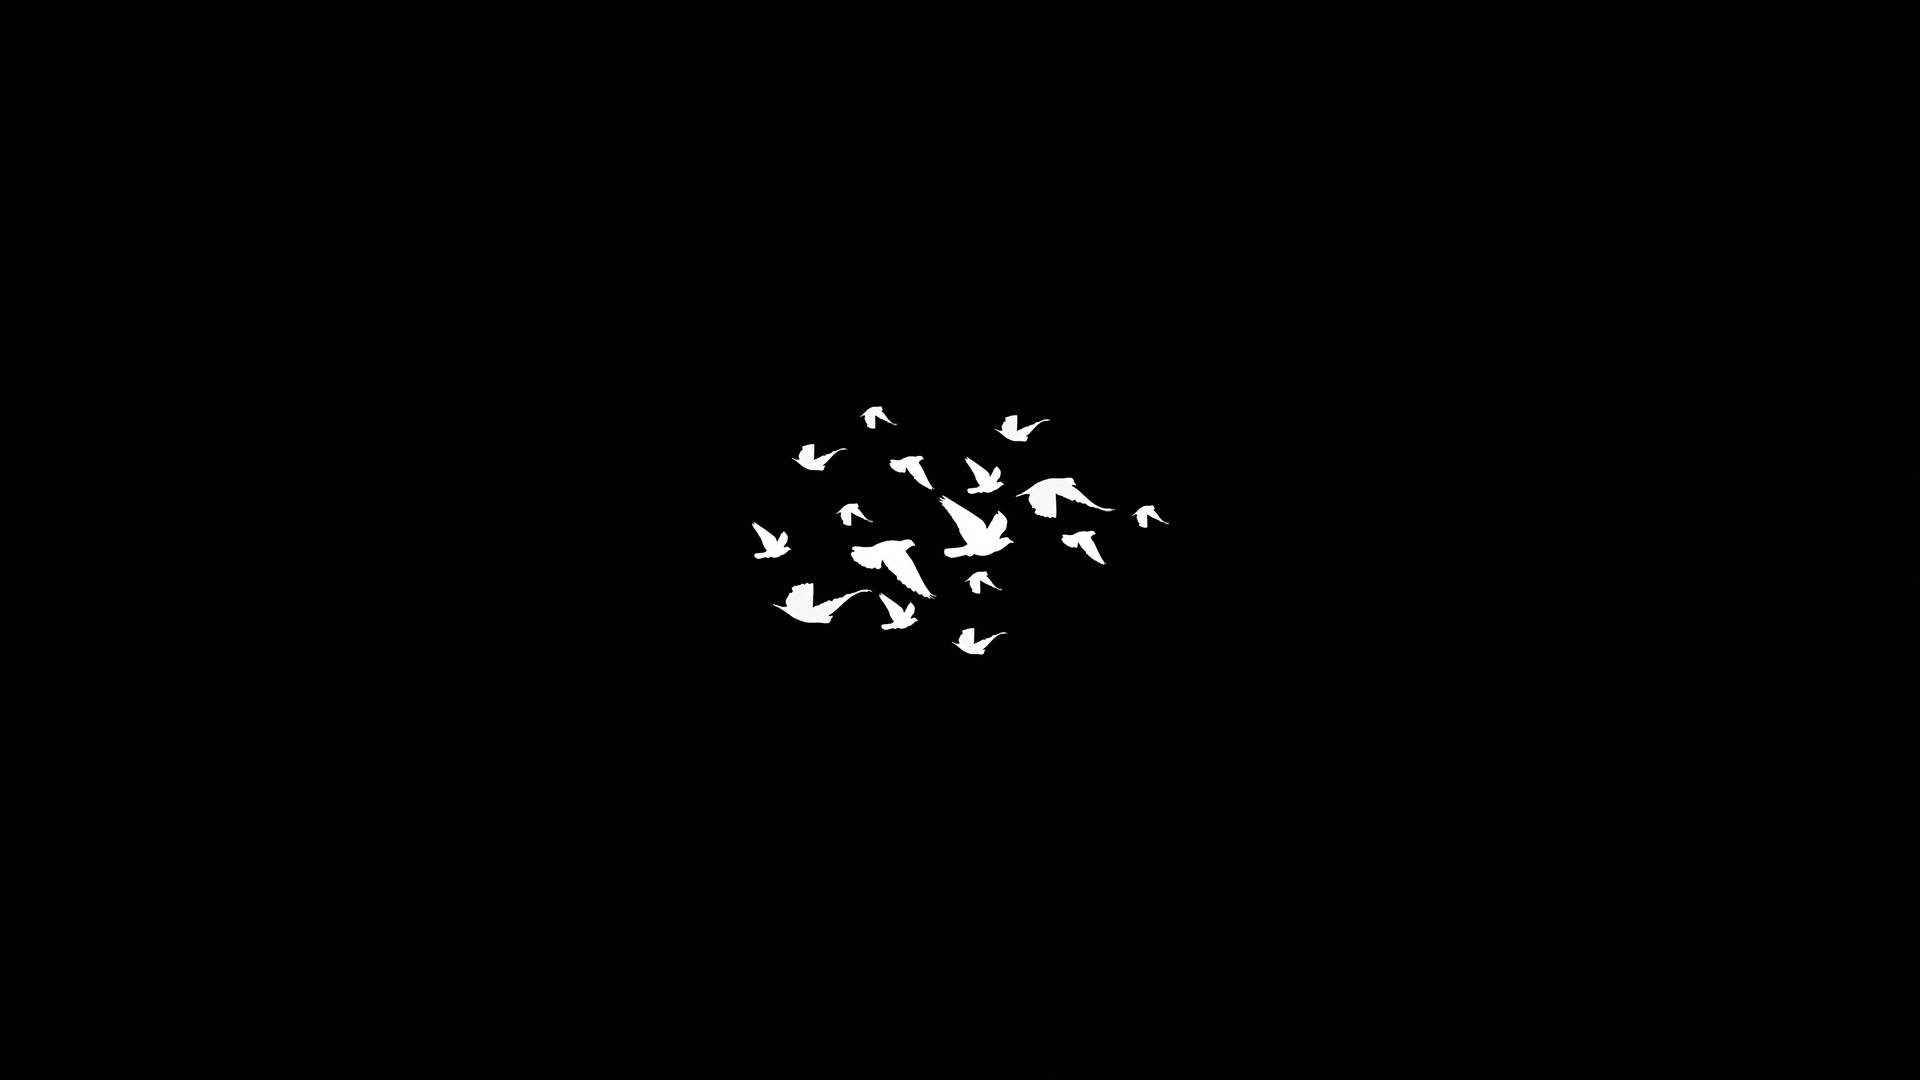 Dark Laptop Birds Compressed In The Center